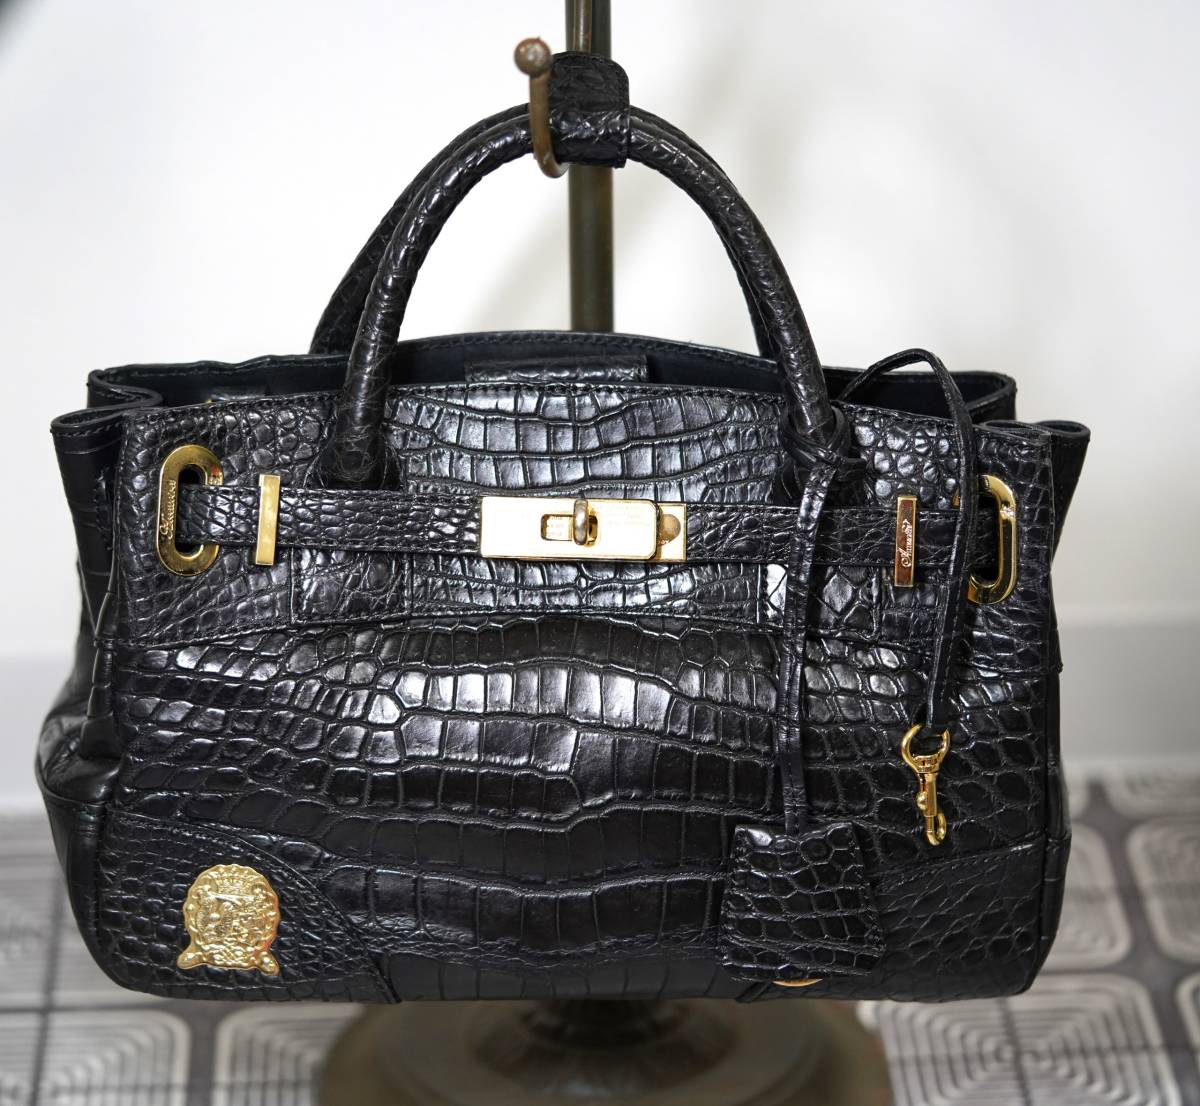 アクセソワ・ドゥ・マドモワゼル AccessoiresDeMademoiselle(ADMJ) - クロコダイル 鞄 BAG BLACK GOLD